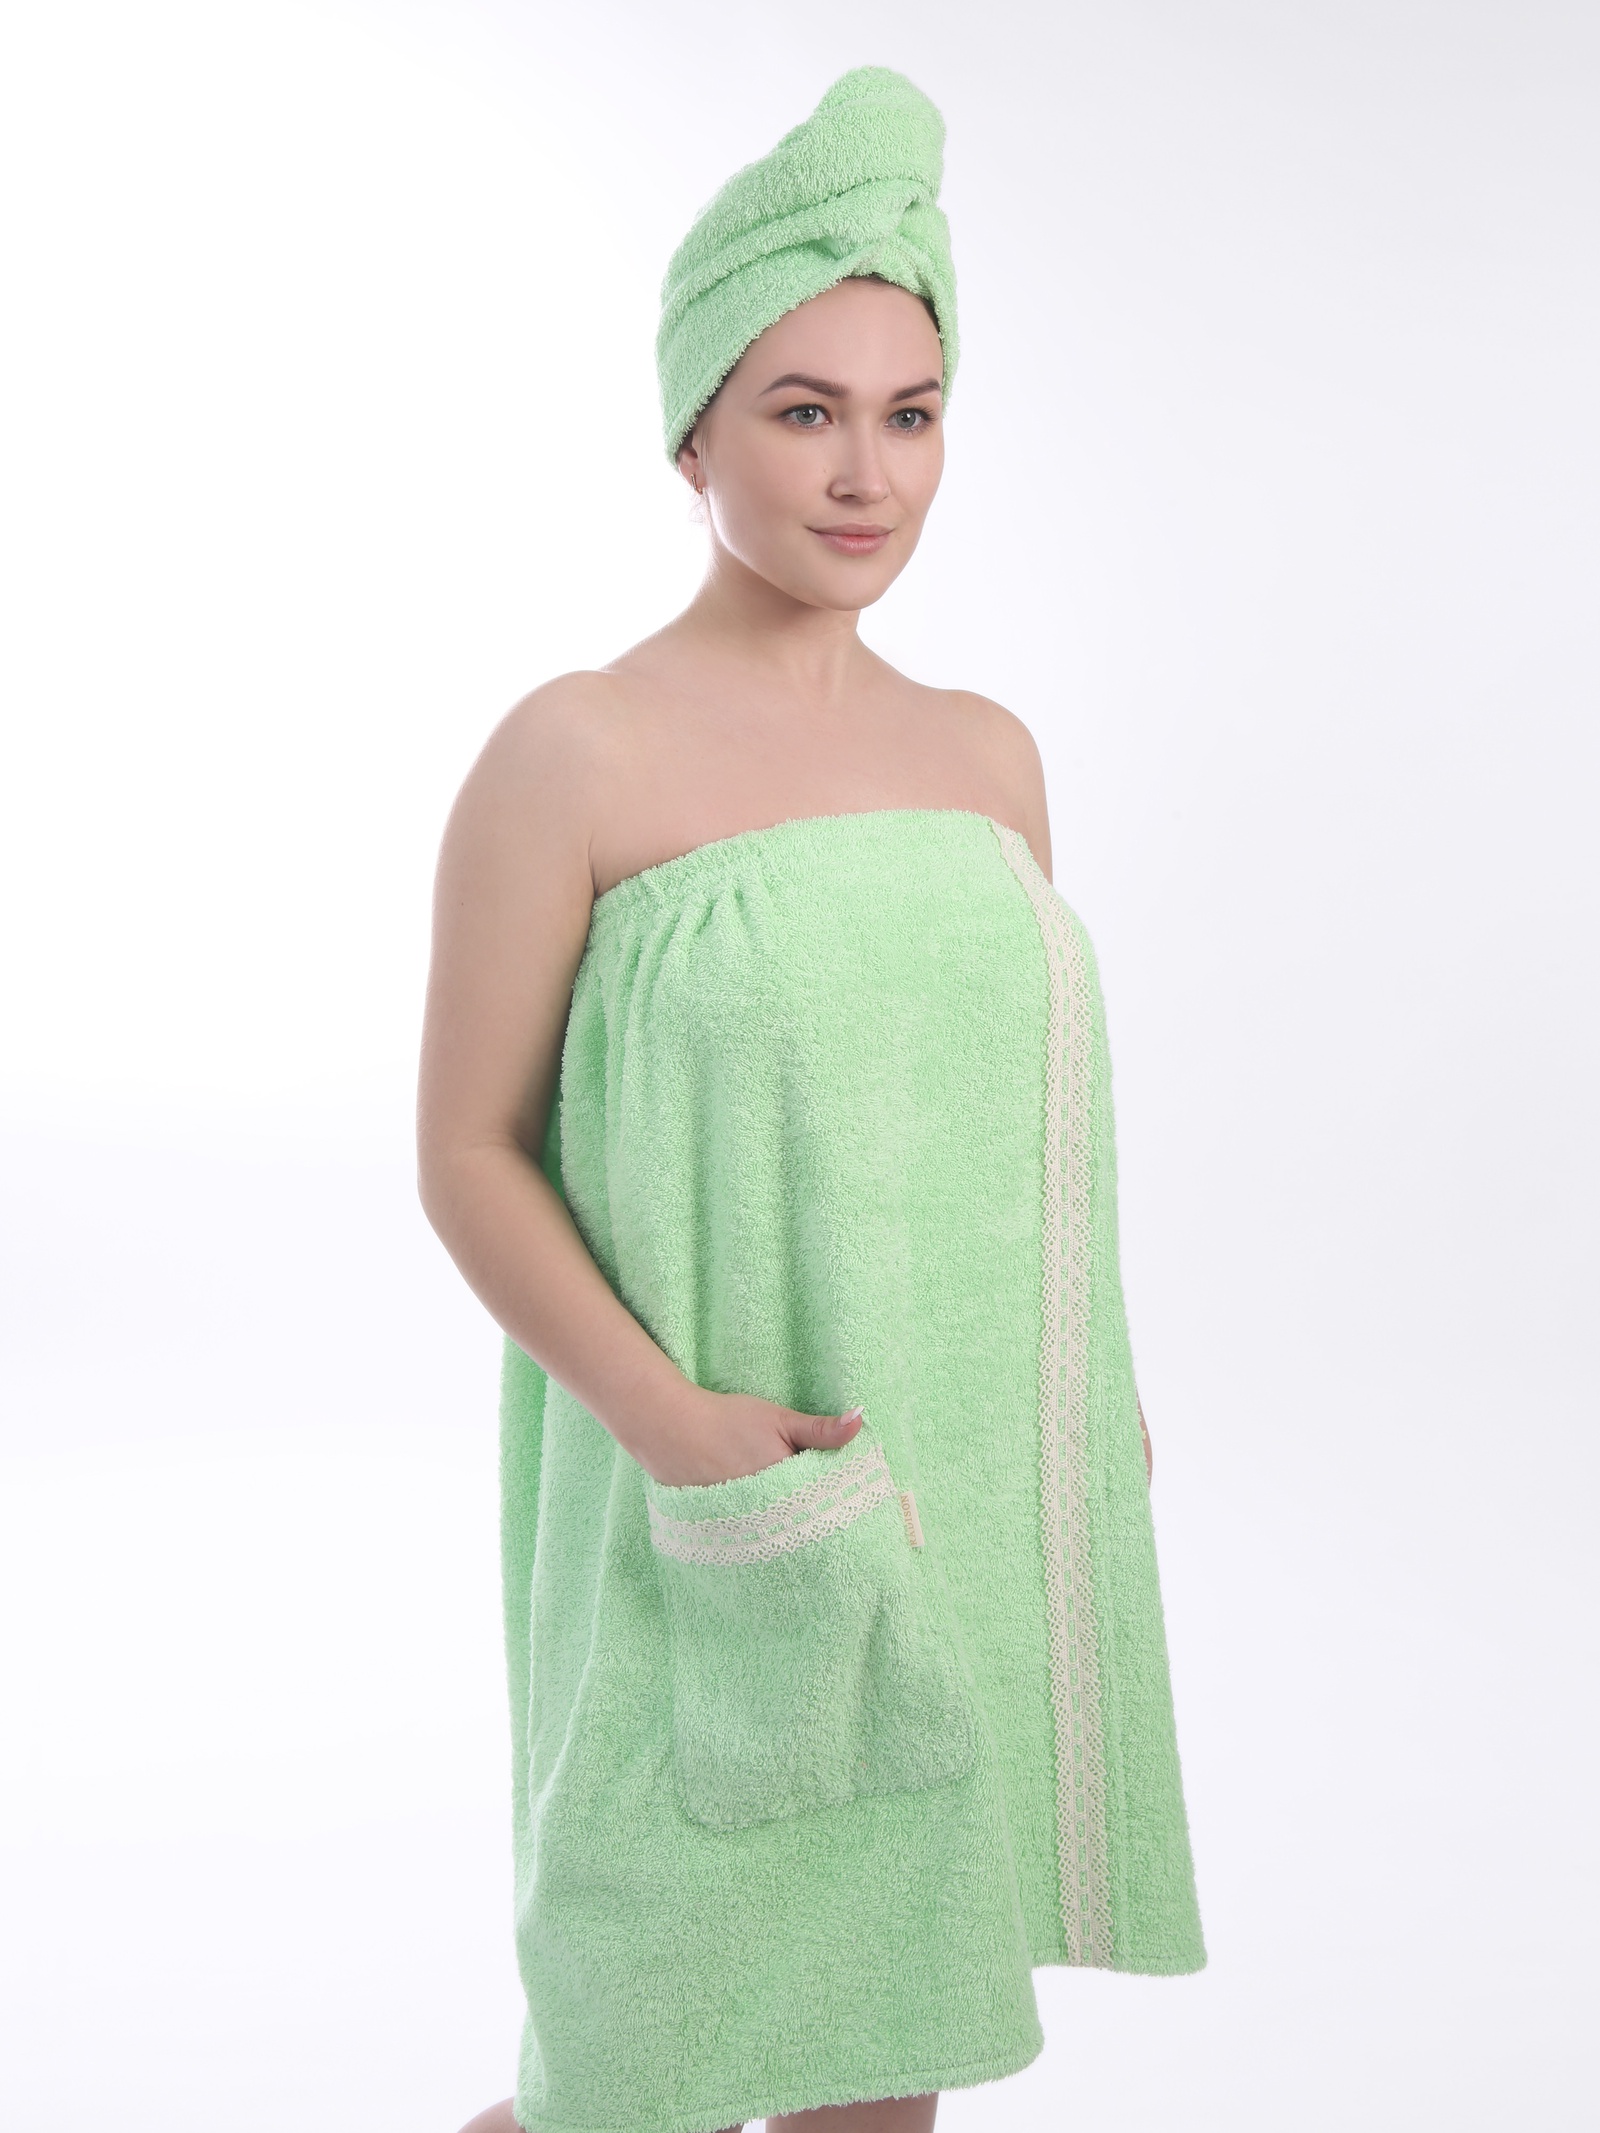 Полотенце для бани купить. Полотенце на липучке для женщин. Полотенце для бани на липучке. Полотенце для сауны на липучке. Банное полотенце на липучке.